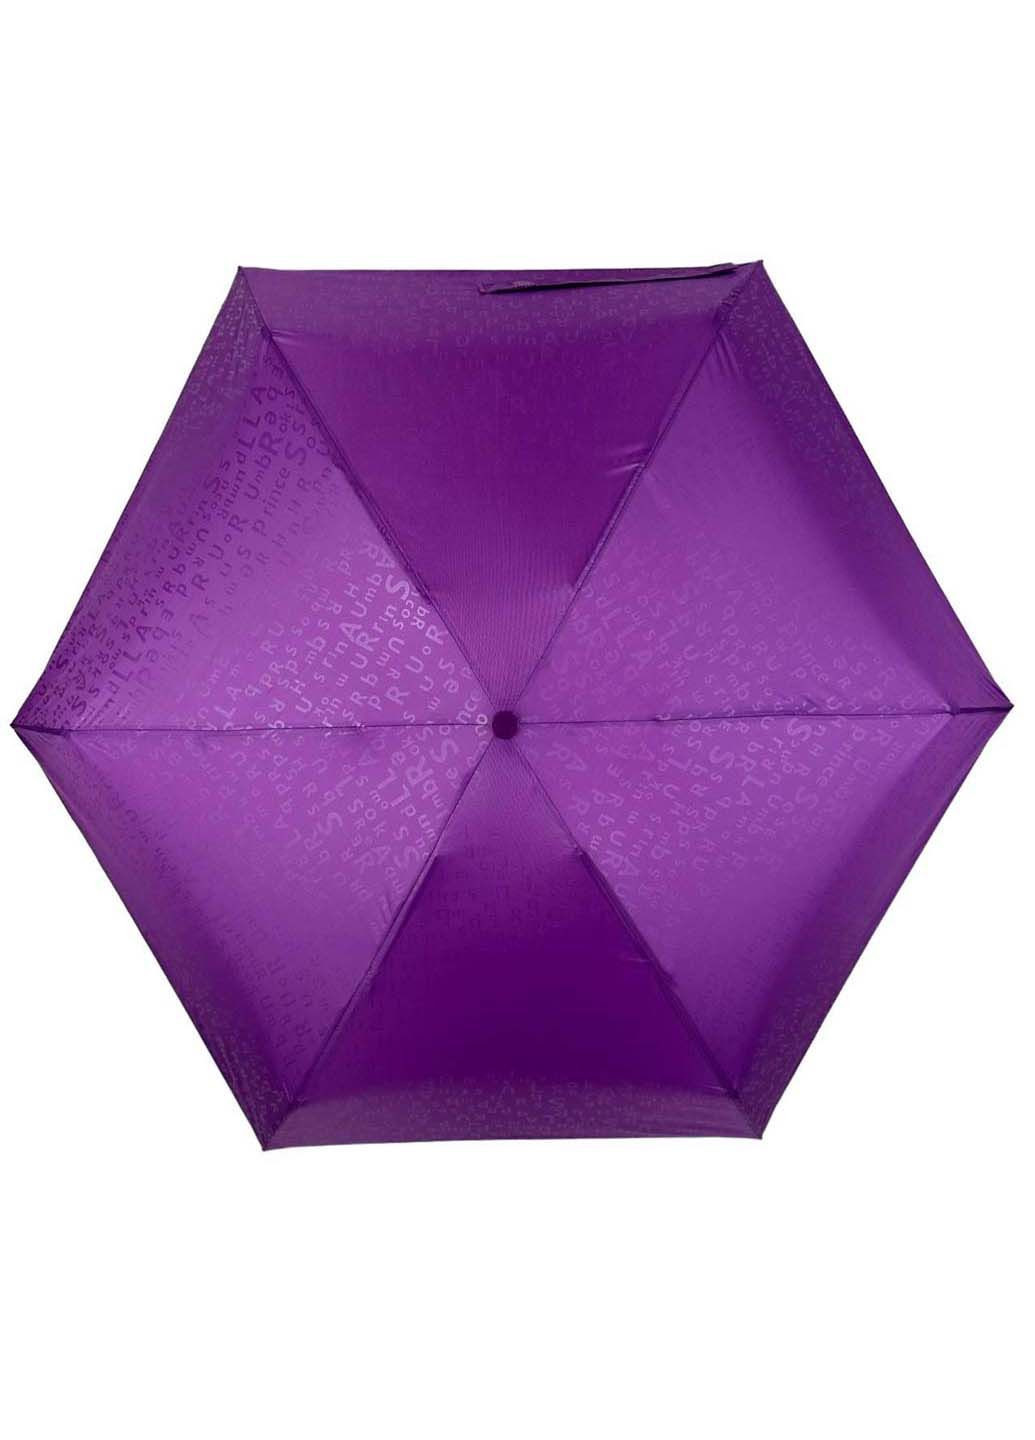 Кишенькова механічна міні-парасолька з принтом Rainbrella (289977611)